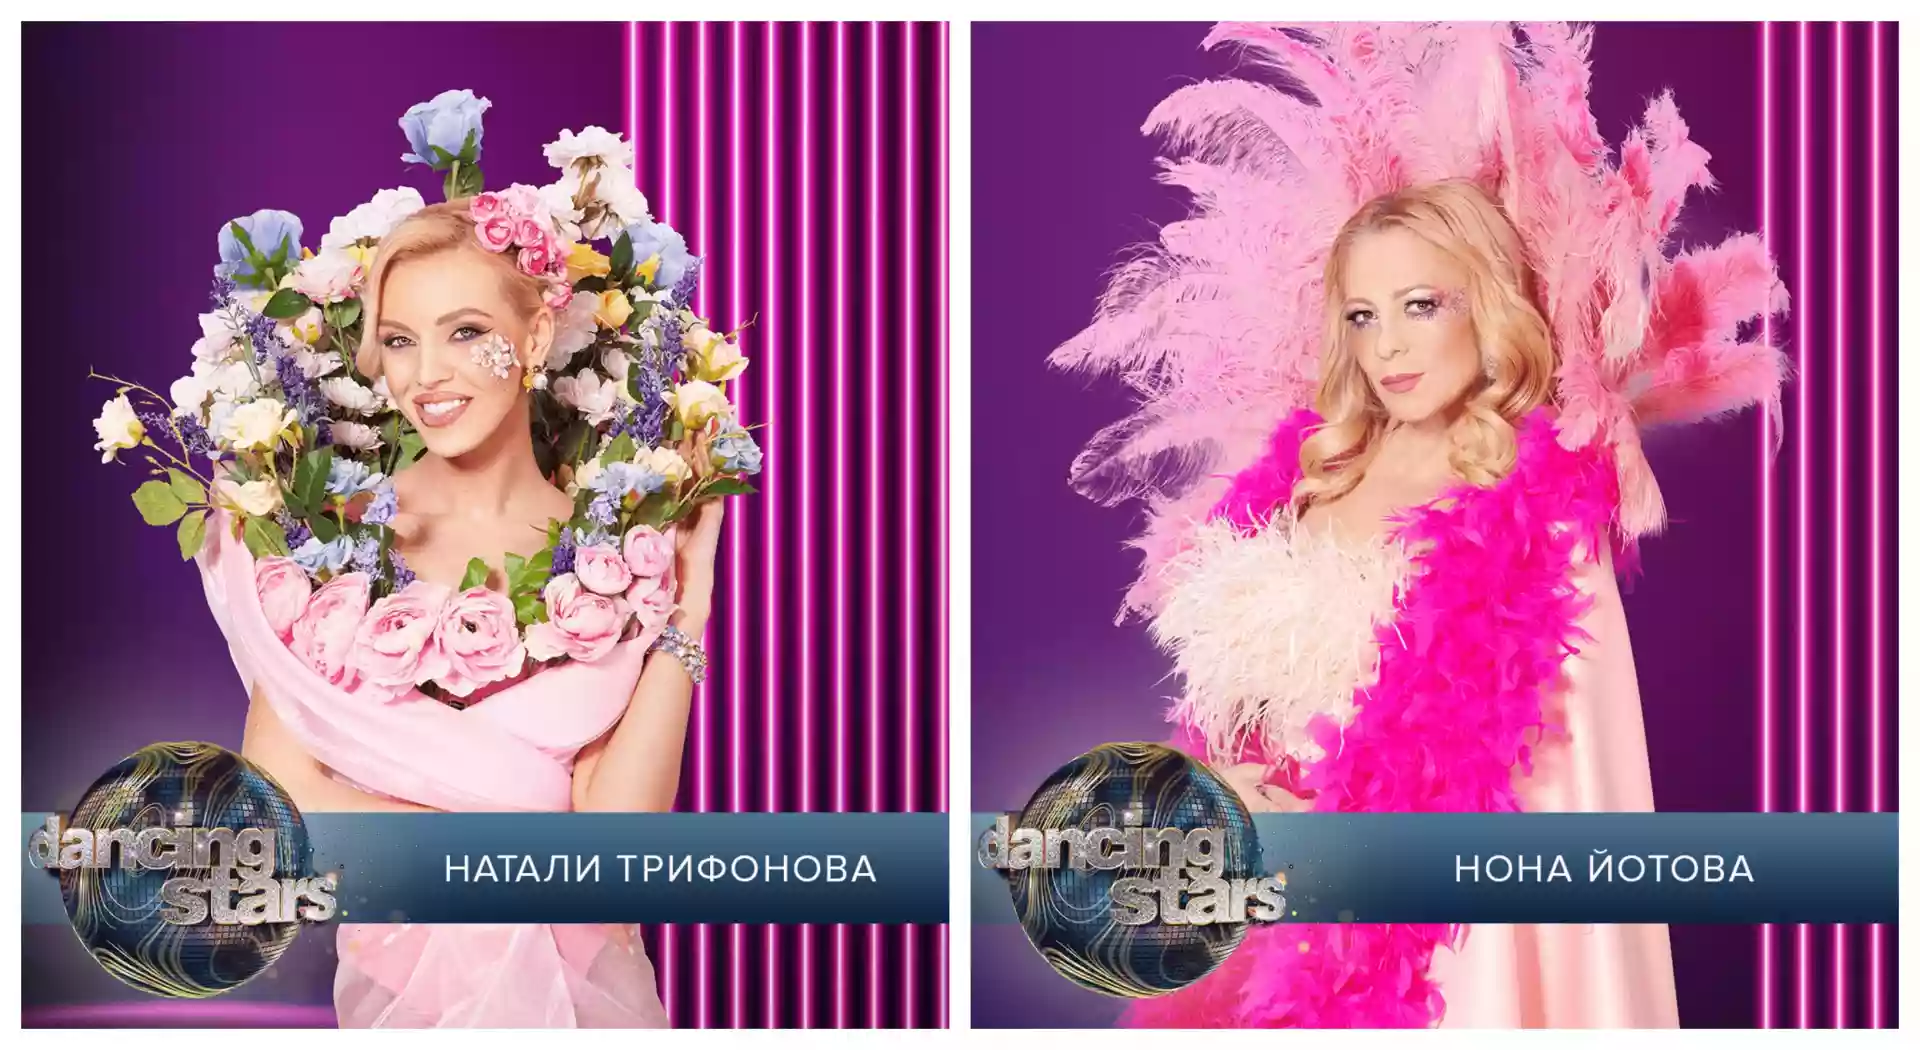 Dancing Stars, Натали Трифонова, Нона Йотова